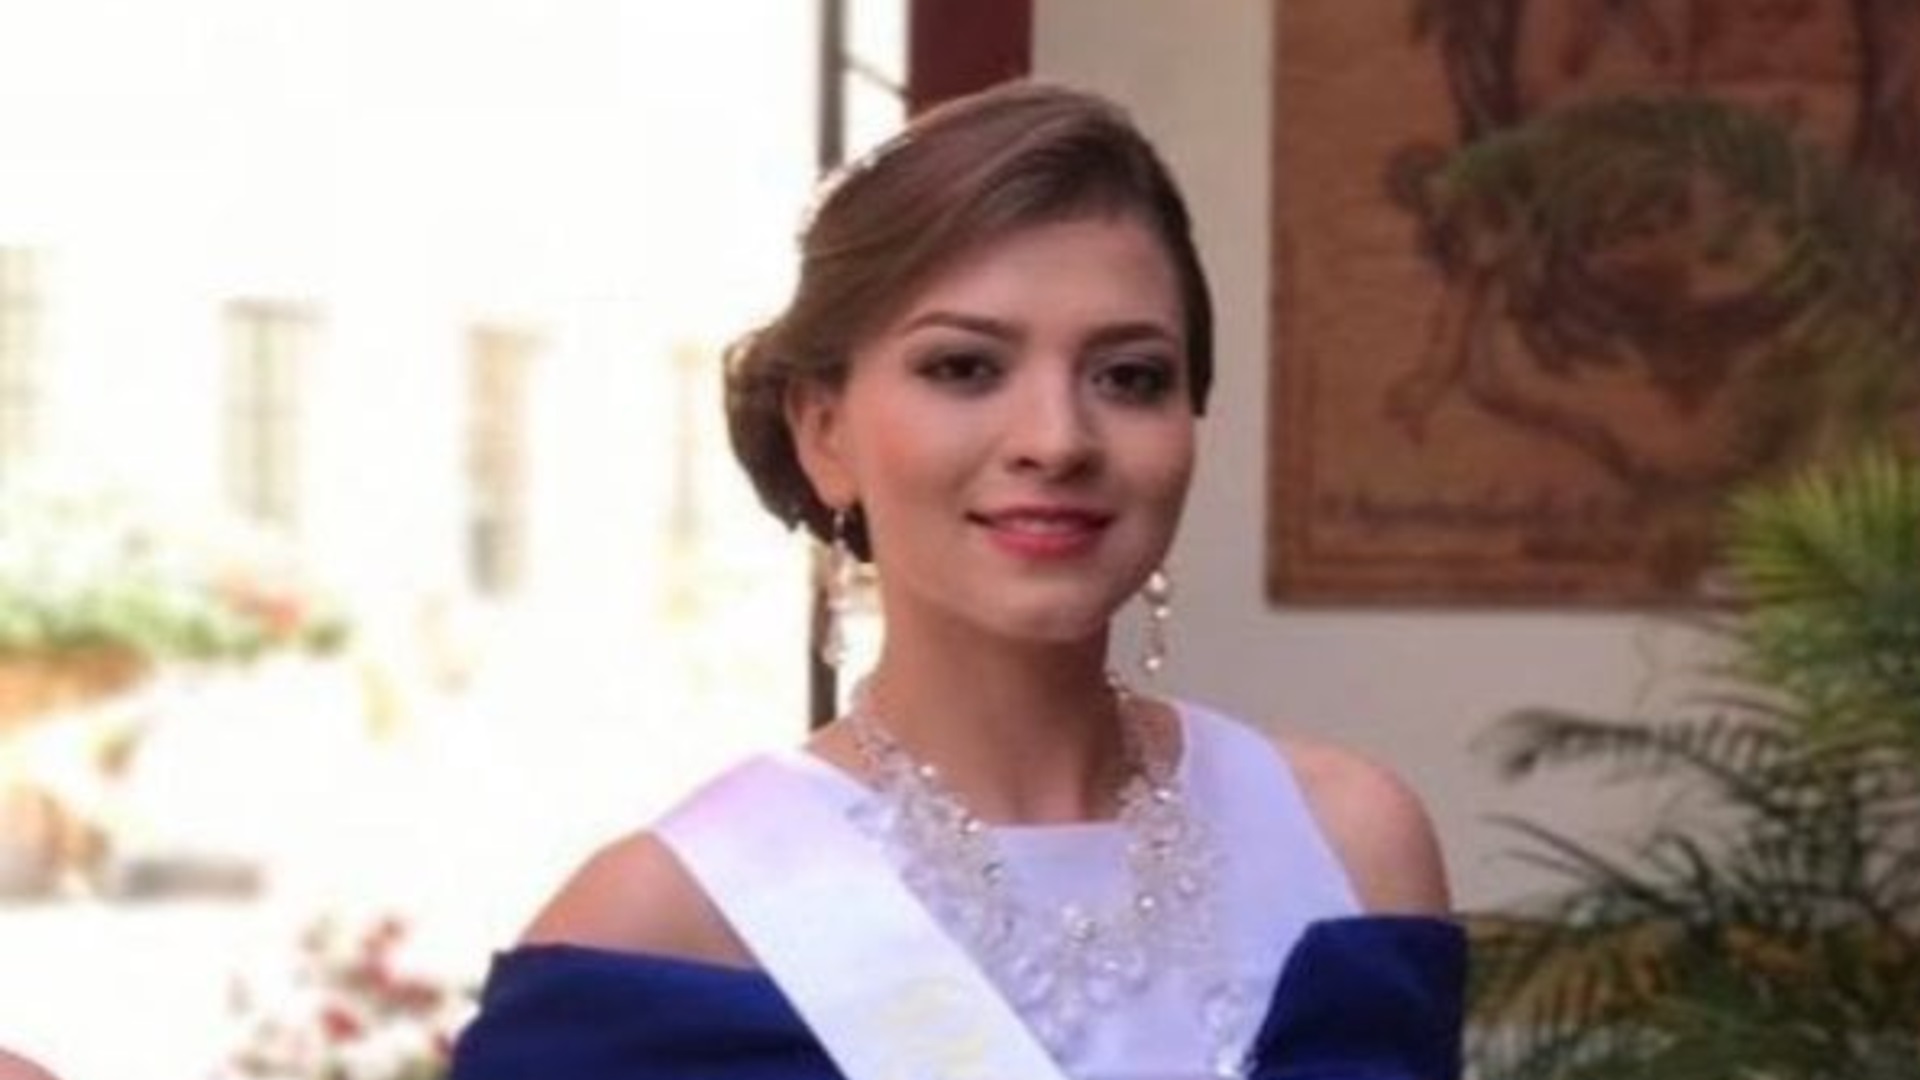 Thalía Cornejo, die ehemalige Schönheitskönigin, die beim Massaker von Salvatierra ermordet wurde